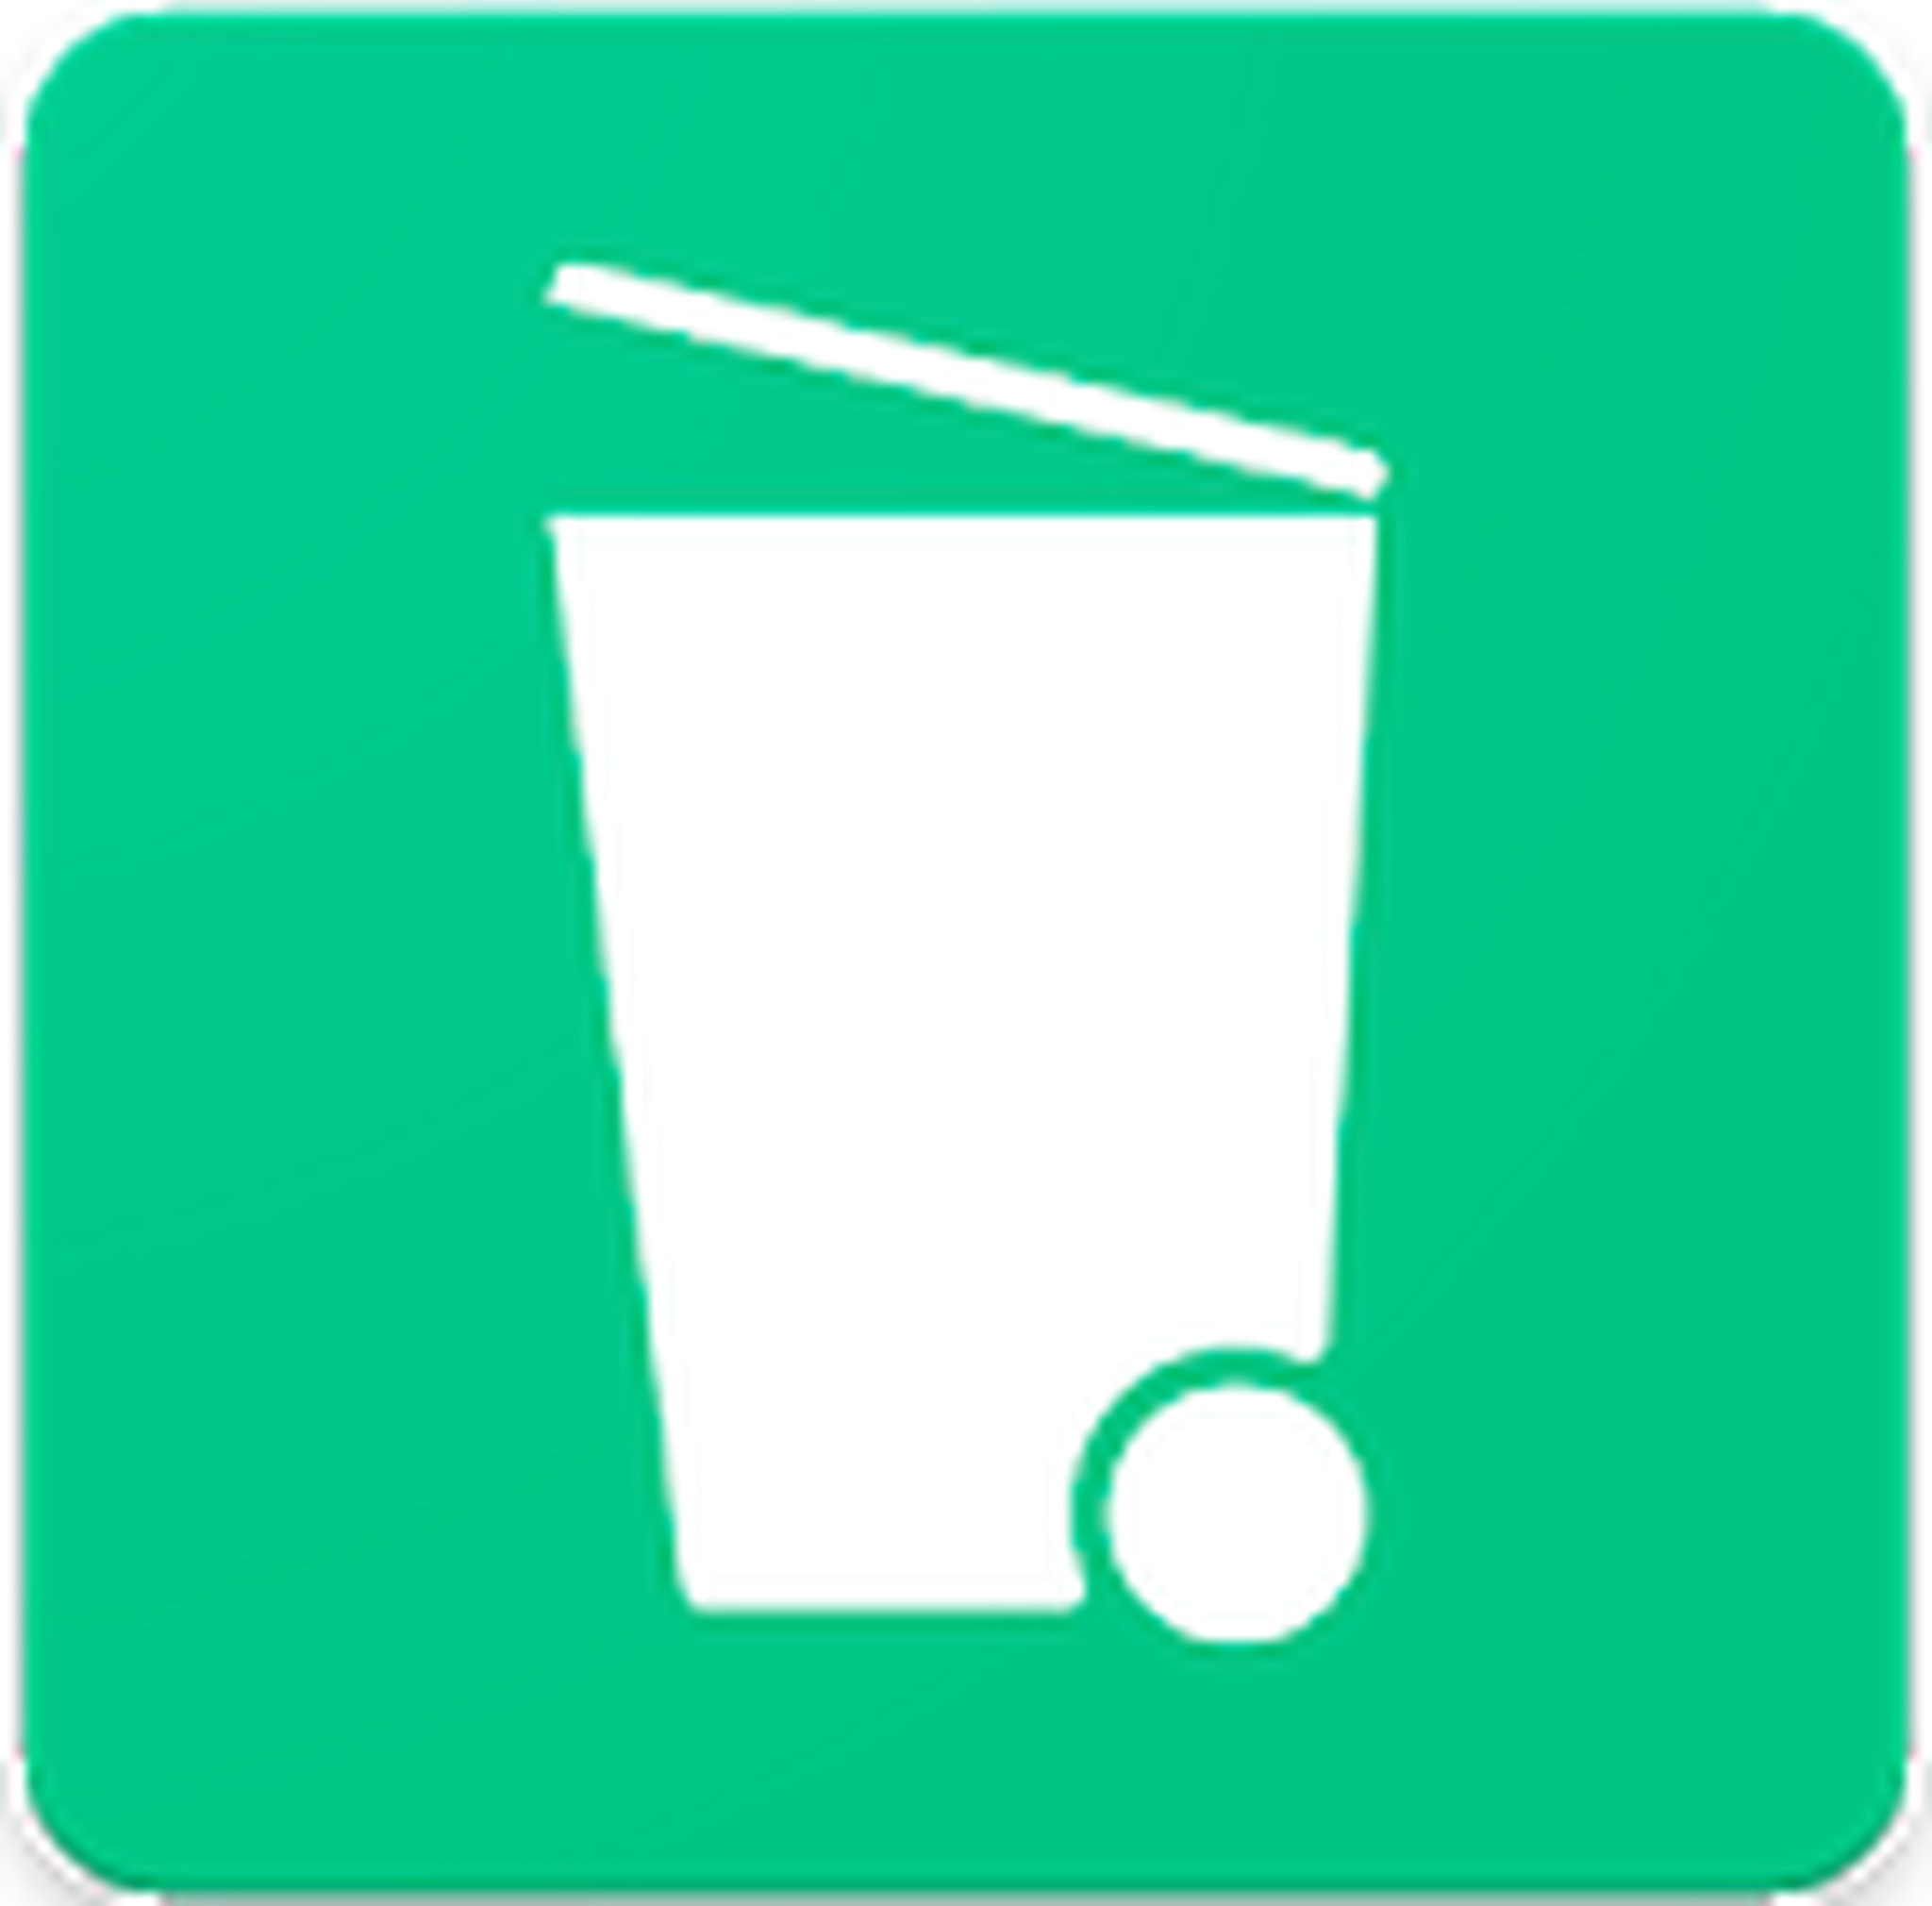 Dumpster App